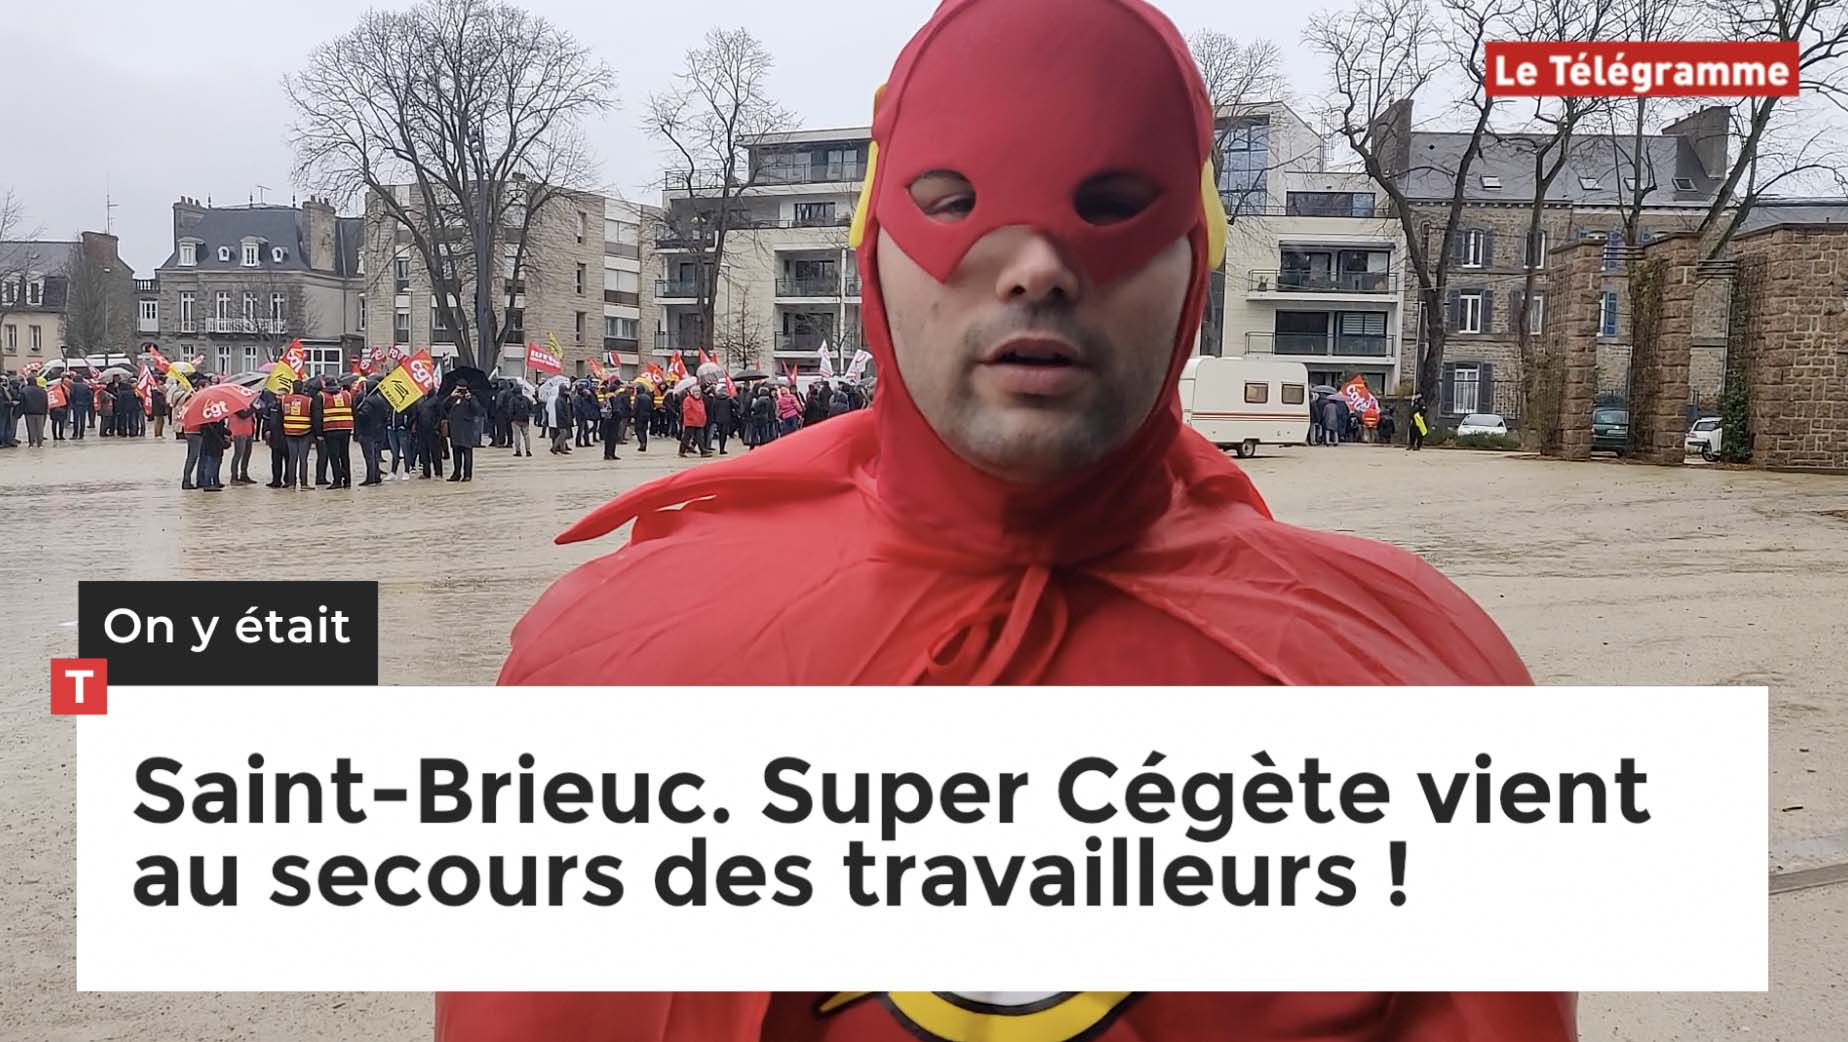 Saint-Brieuc. Super Cégète vient au secours des travailleurs ! (Le Télégramme)